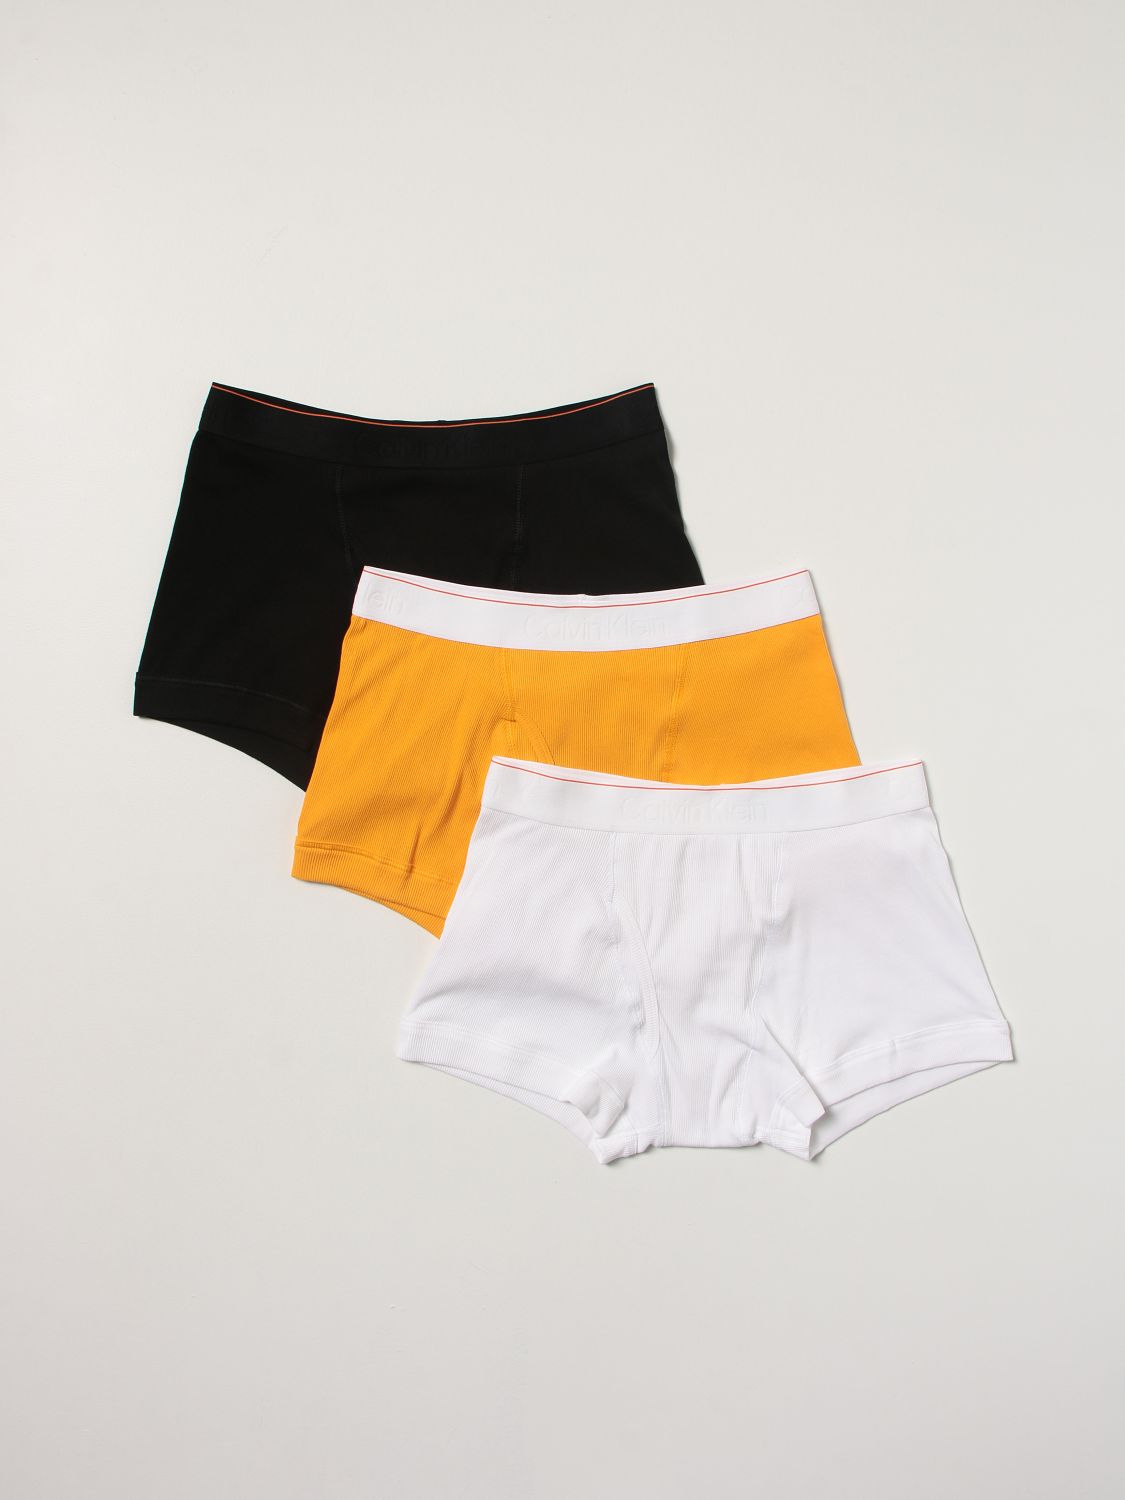 Introducir 69+ imagen calvin klein heron preston underwear